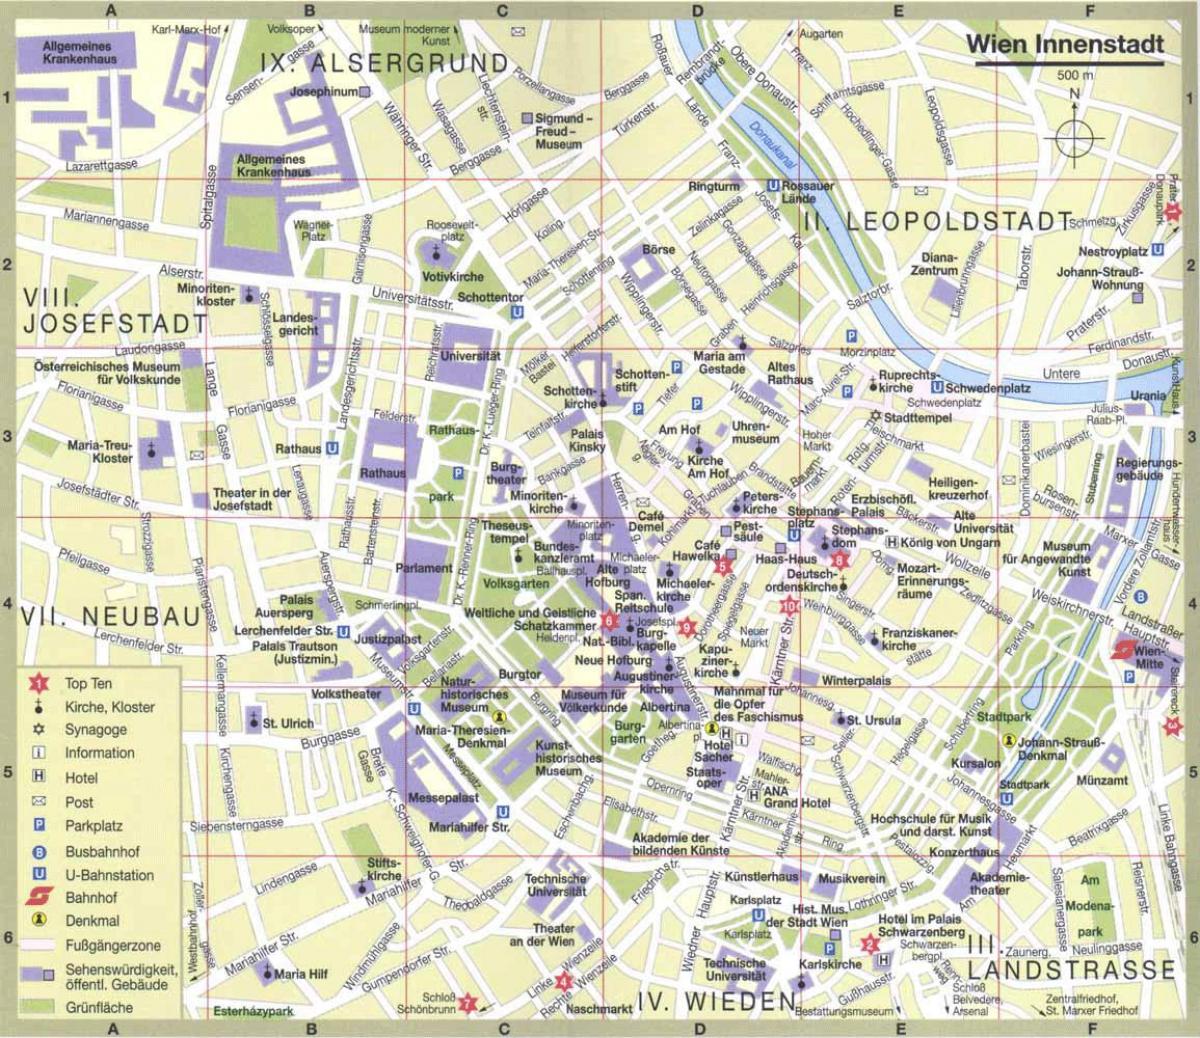 Viena, la ciutat turística mapa